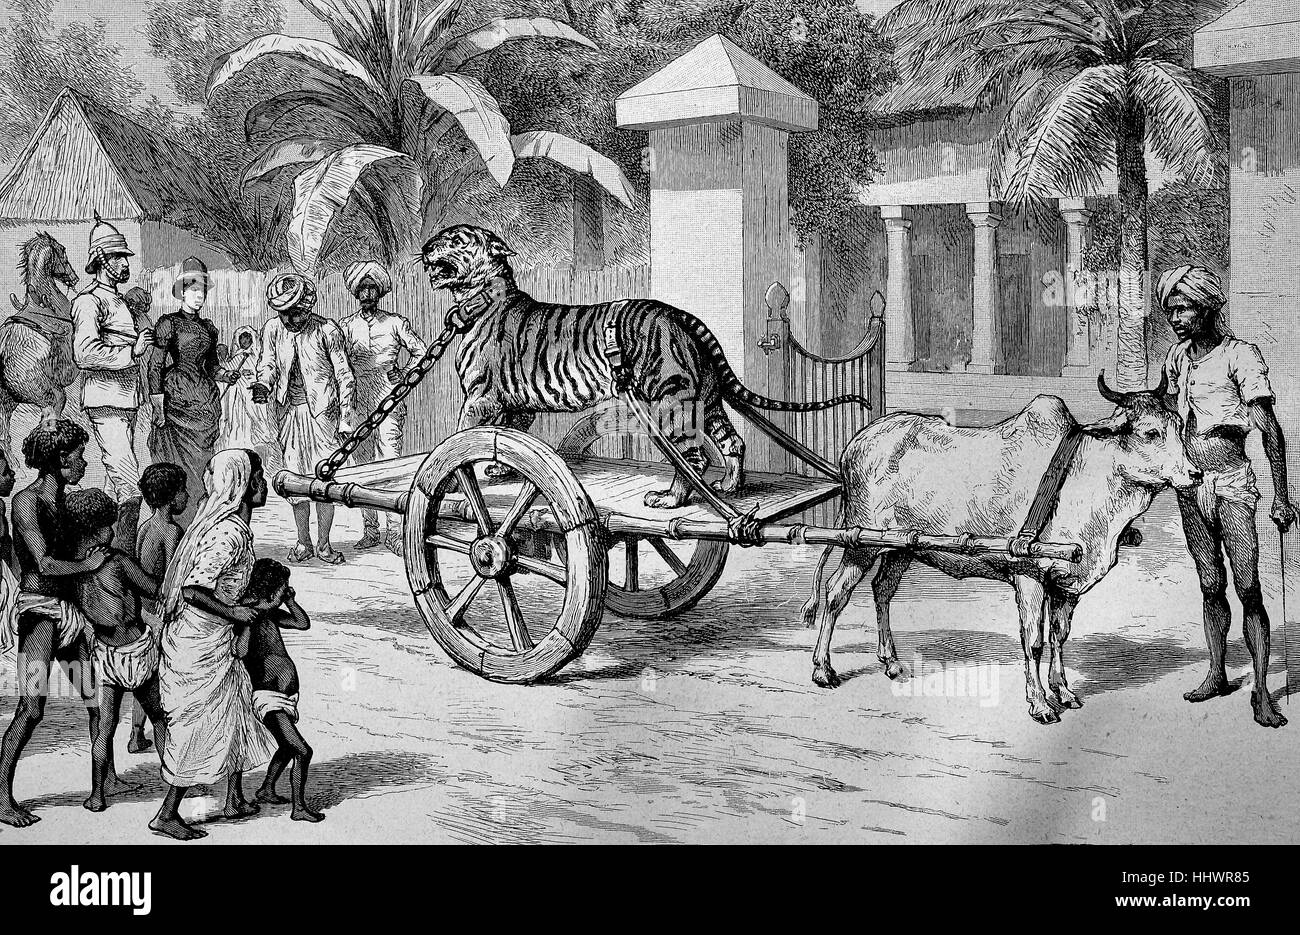 Angekettet, erfassten Tiger ist auf ein Auto durch die Straße, Indien, Geschichtsbild oder Illustration, veröffentlicht 1890, digital verbessert Gefahren. Stockfoto